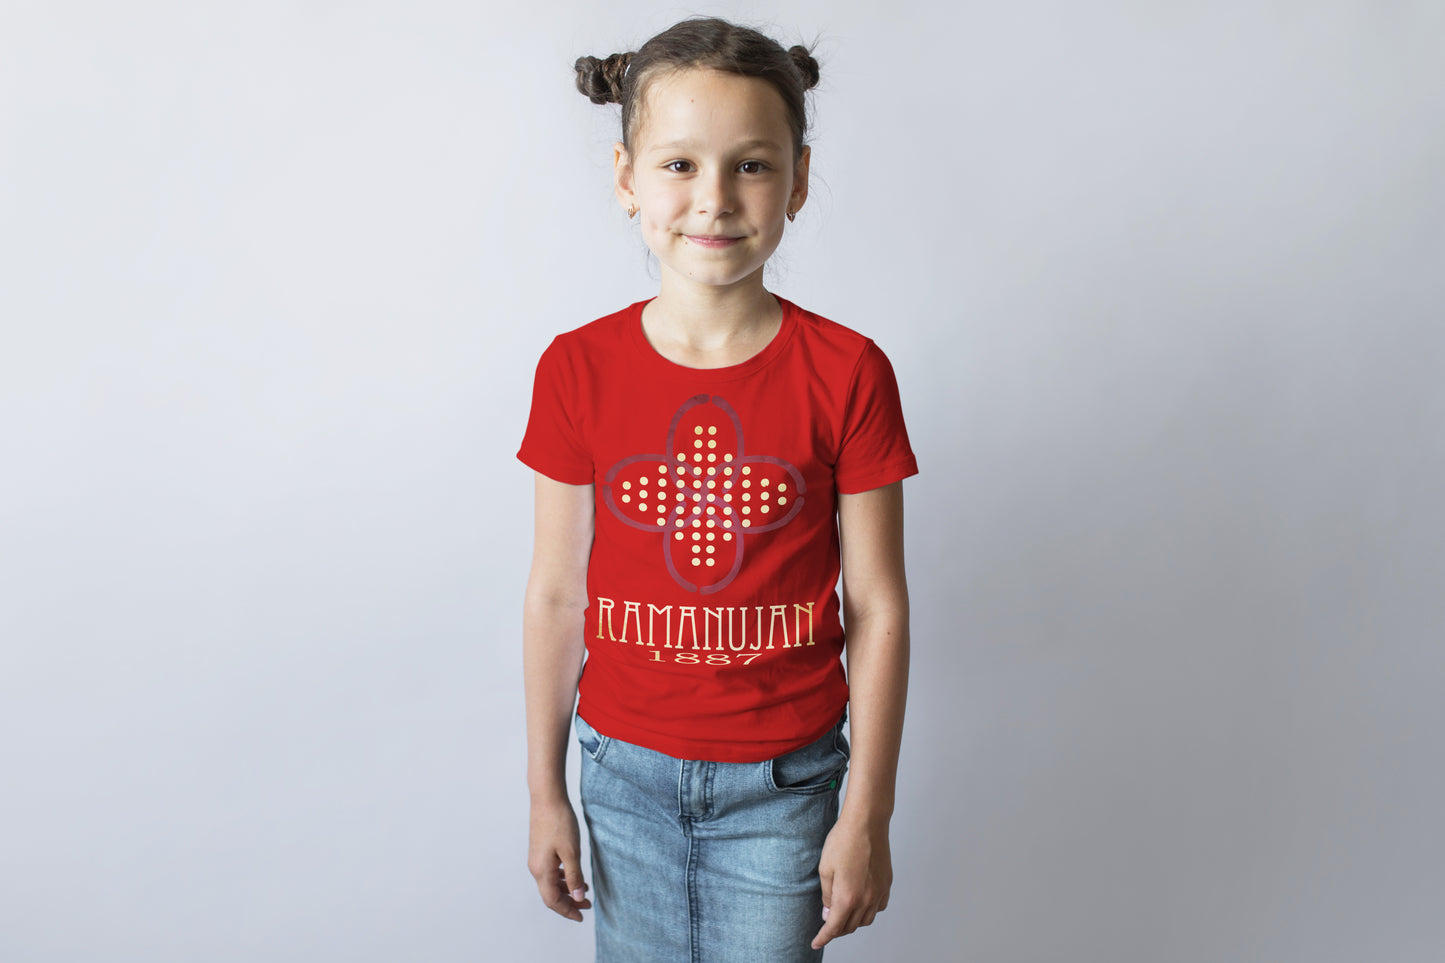 Ramanujan Math T-shirt, Prime Numbers Mathematician Graphic Tee